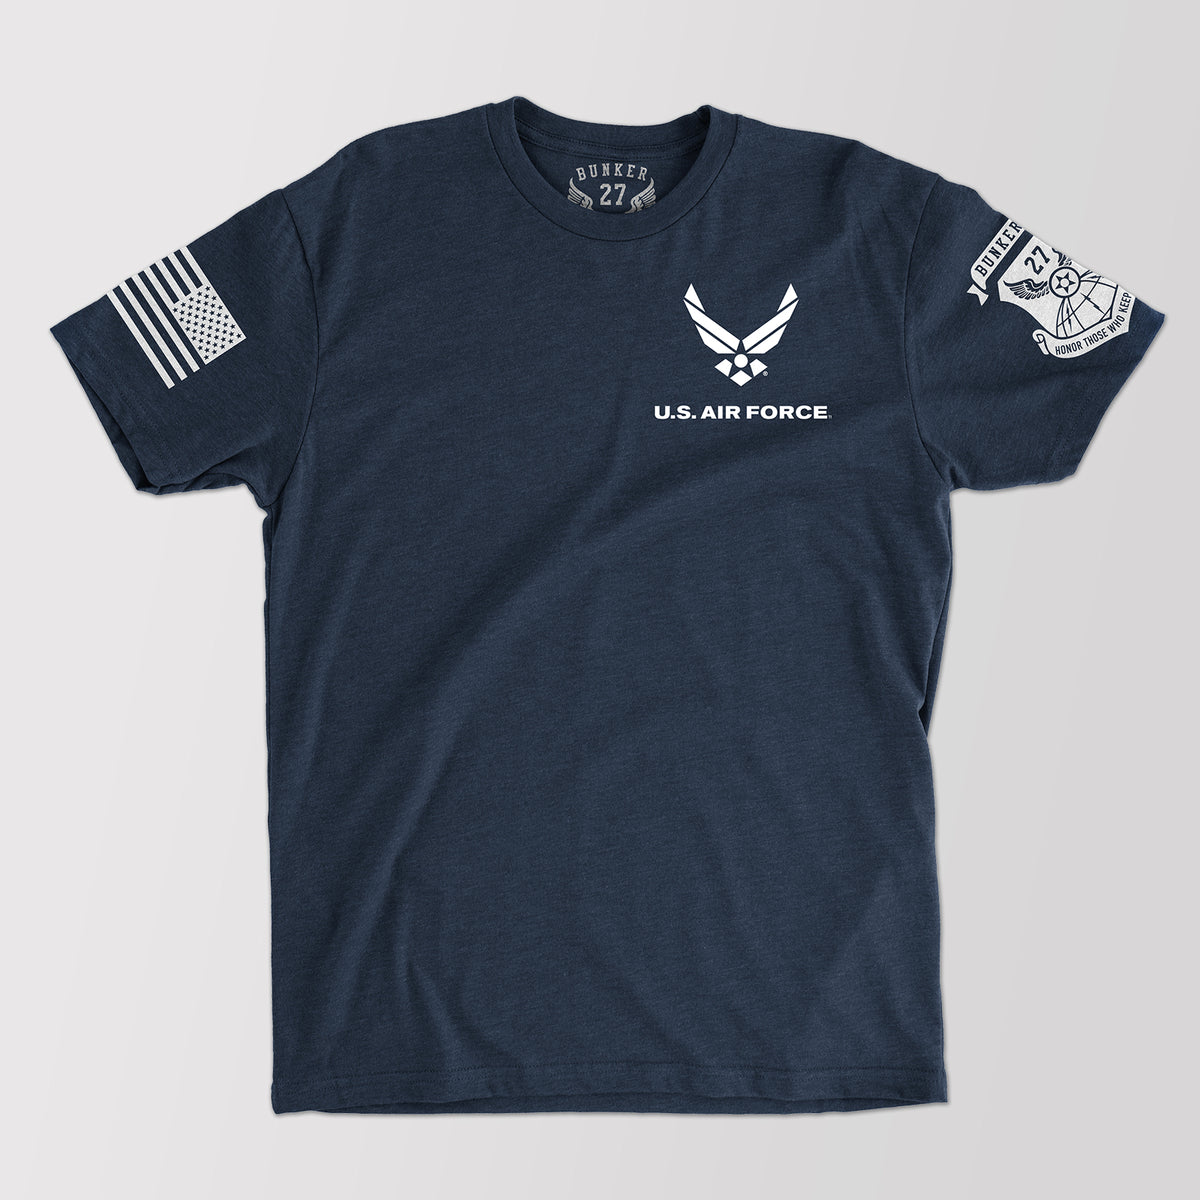 Official U.S. Air Force Logo T-Shirt, Bunker 27